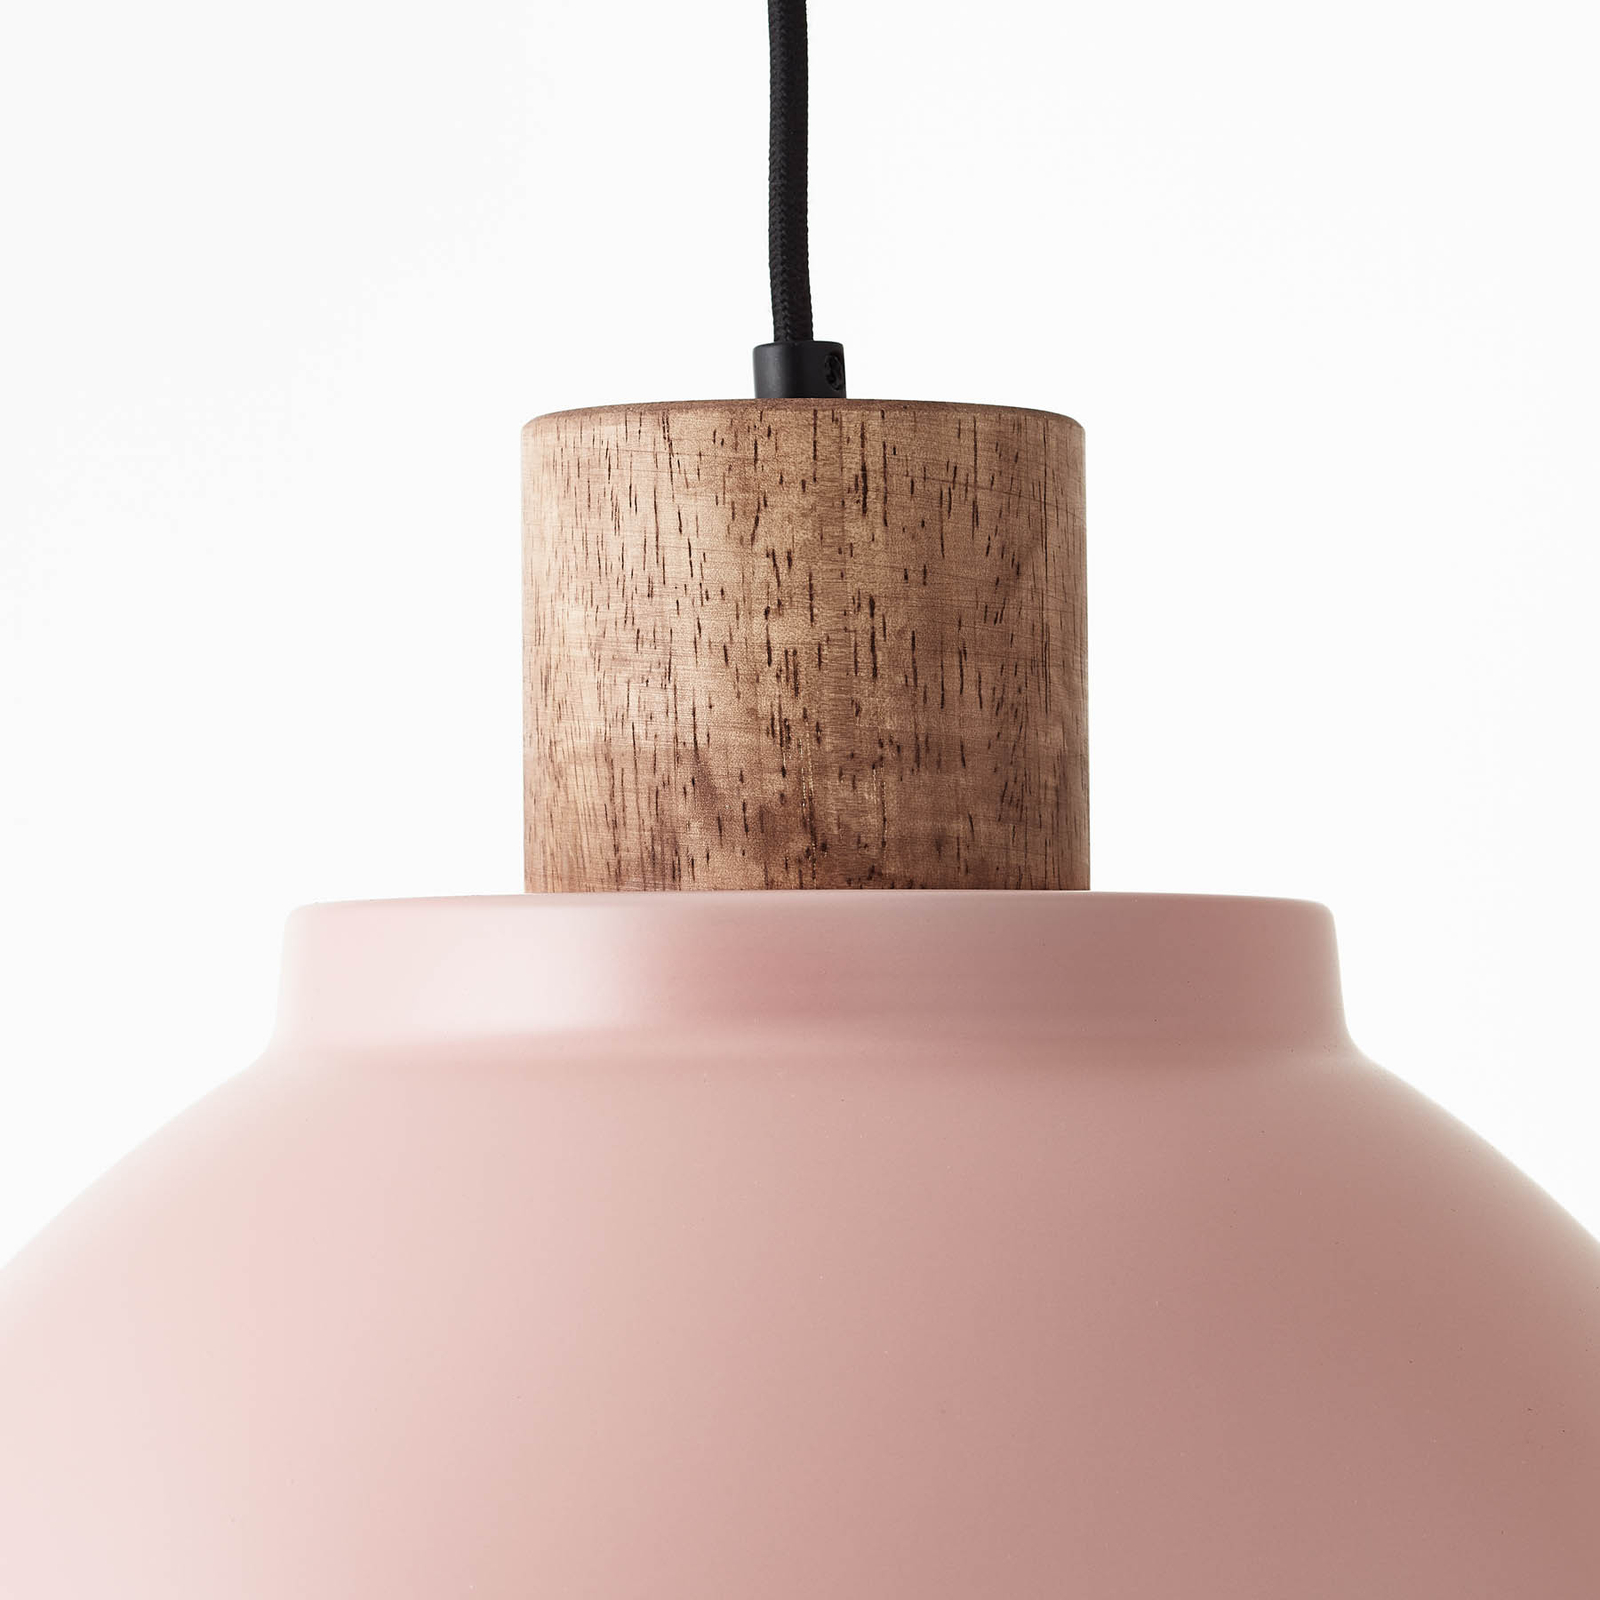 Suspension Erena avec détail en bois, rose clair